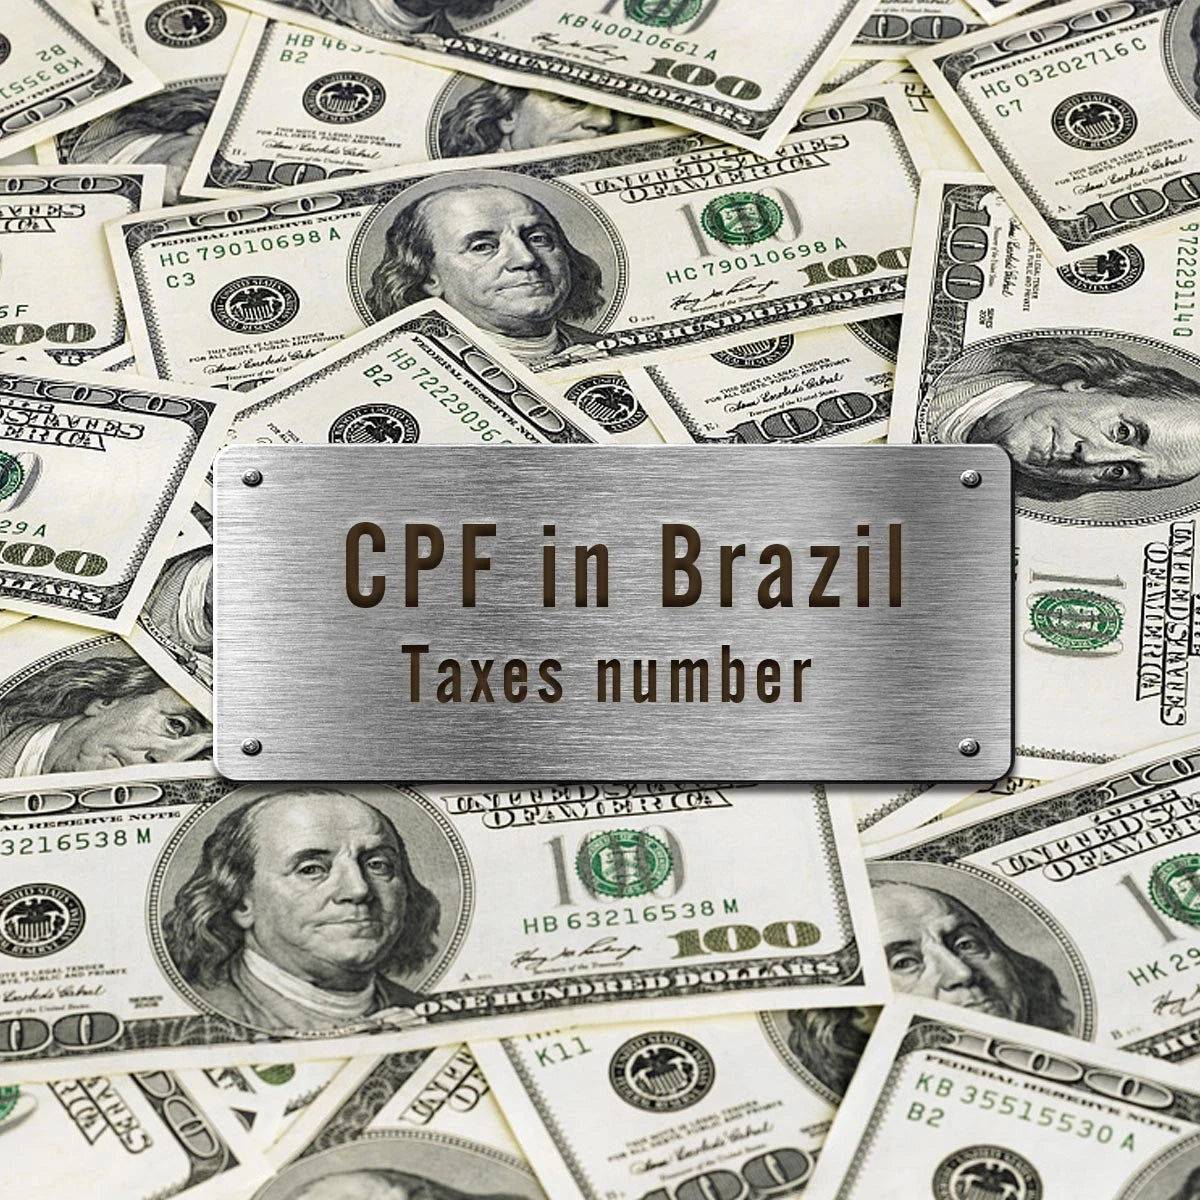 คำสั่งซื้อทั้งหมด (บราซิล) ต้องมีหมายเลขประจำตัวผู้เสียภาษี (CPF)